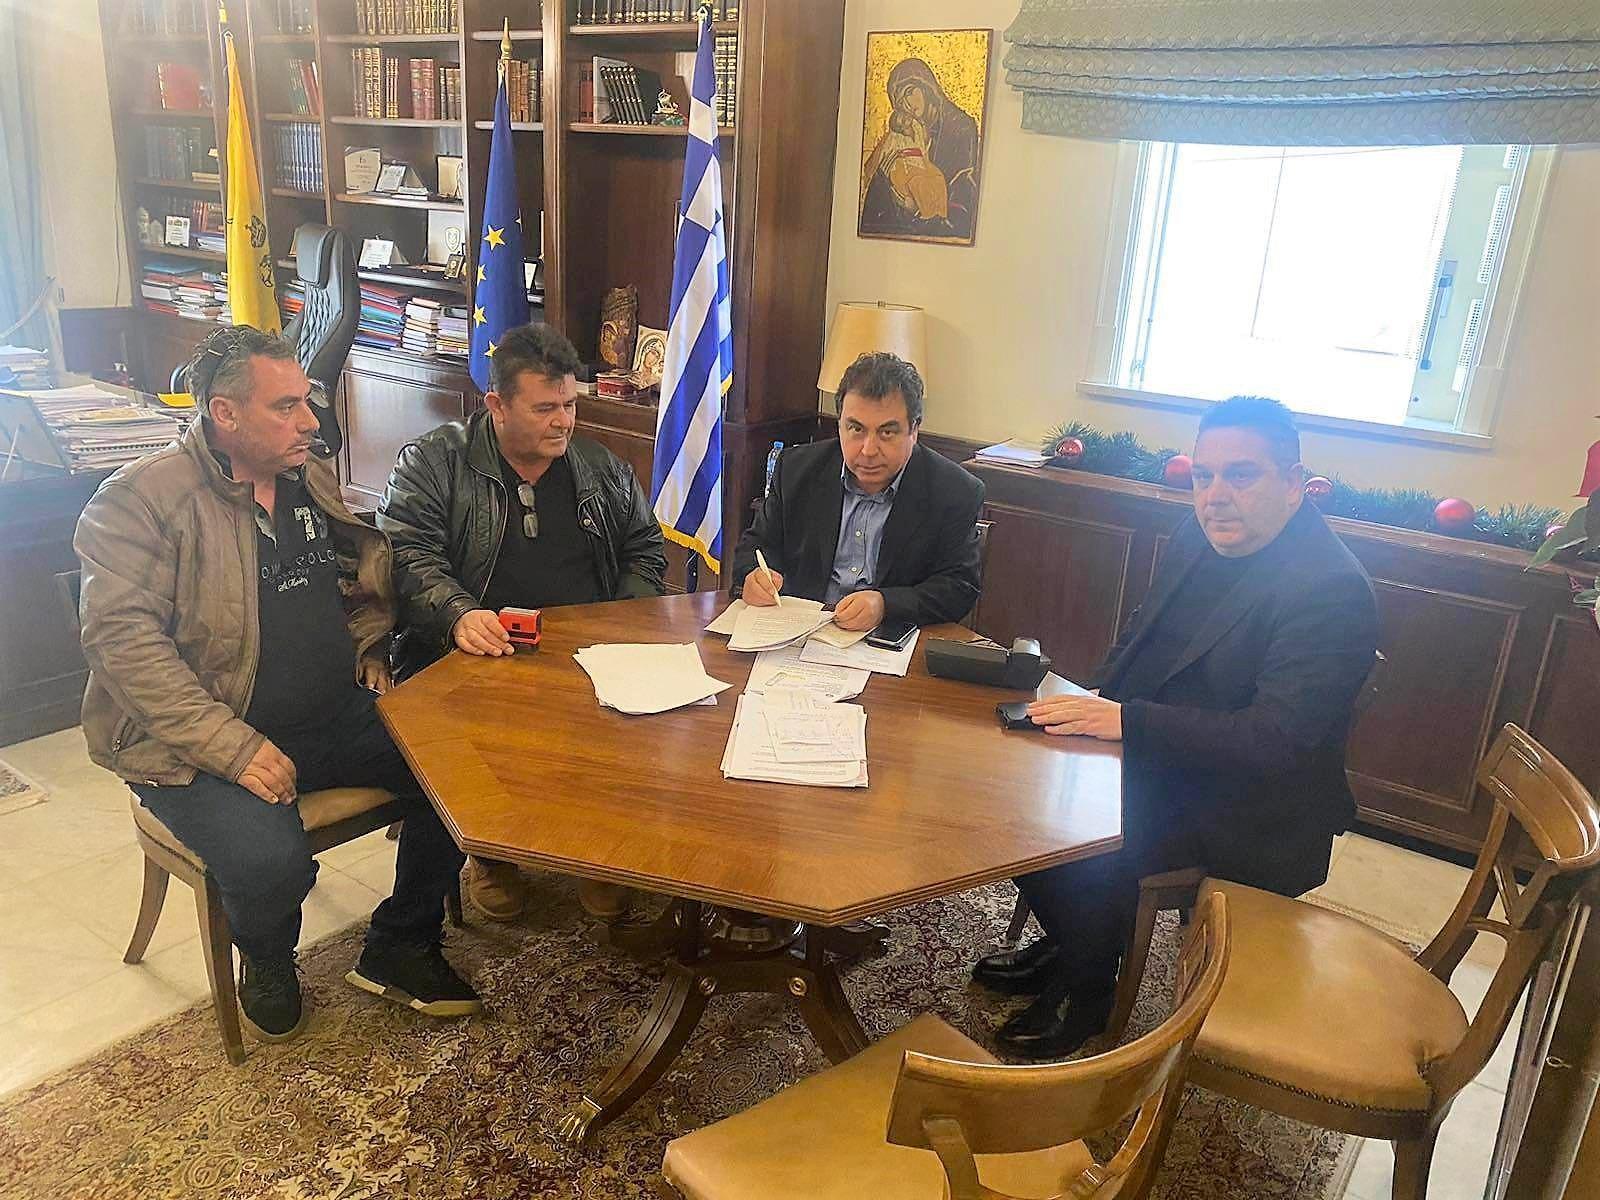 Ο Δήμαρχος Πύργου Παναγιώτης Αντωνακόπουλος υπέγραψε σύμβαση για έργα σε Μυρτιά, Λαμπέτι και Αμπελώνα